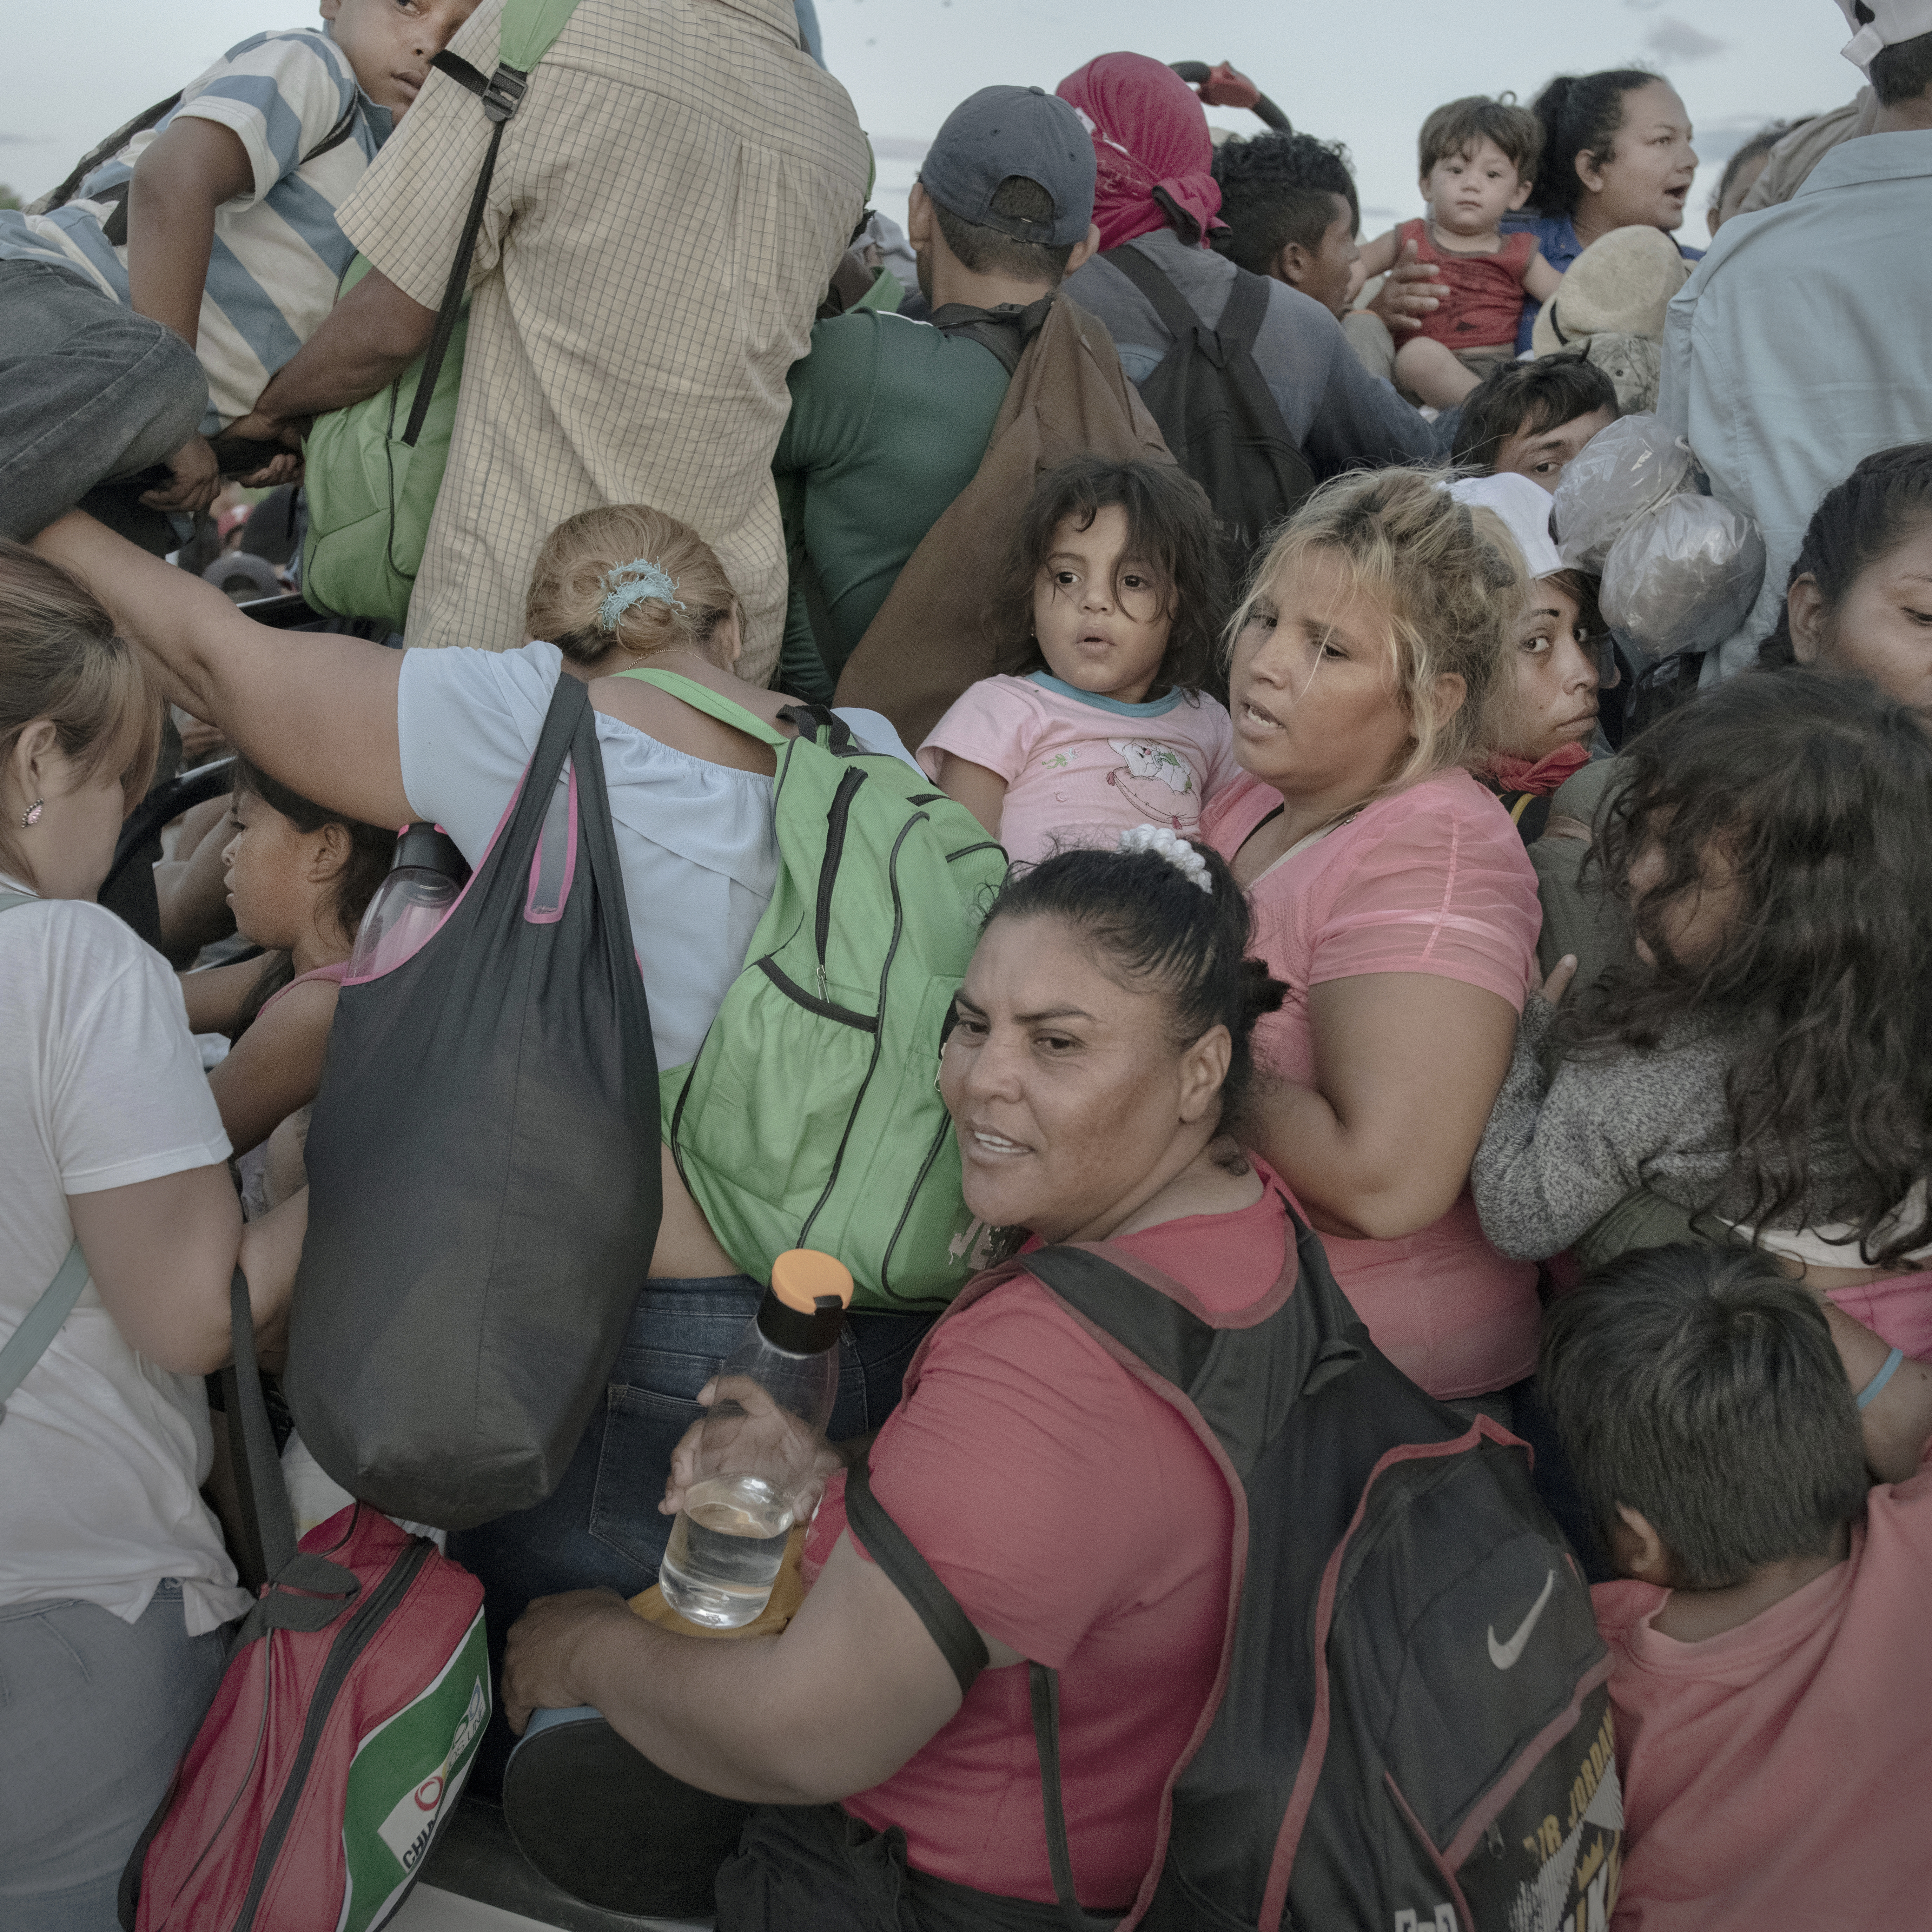 Fotograf Pieter Ten Hoopen dokumentuje příběhy lásky na pozadí uprchlické krize